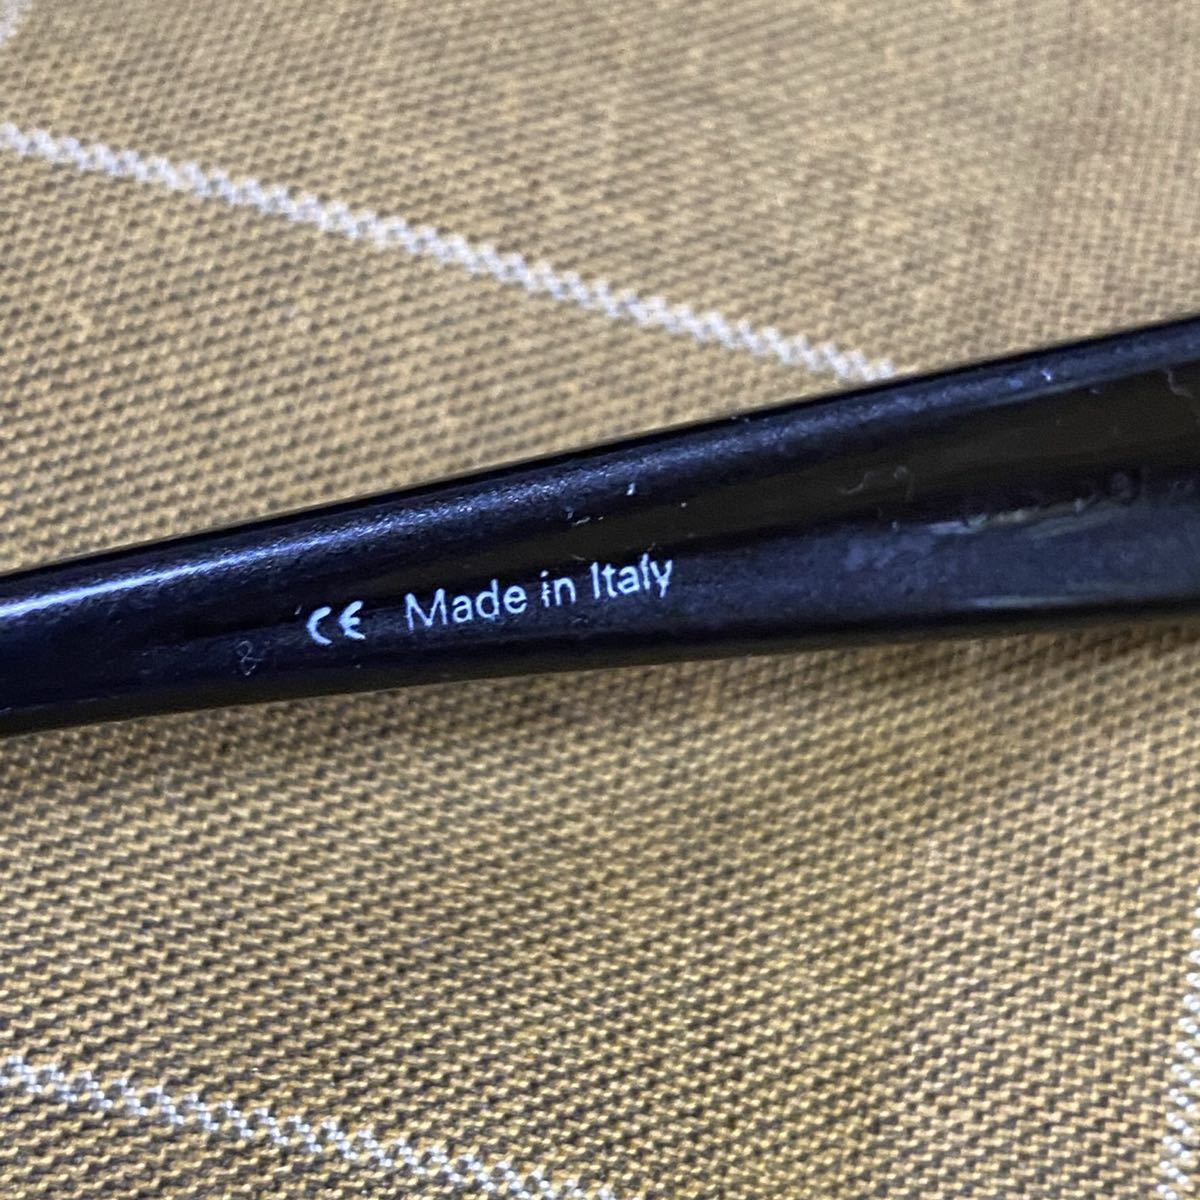 サングラス アーネット スウィンガー イタリア製 ARNETTE Sunglasses Made in Italy_画像5